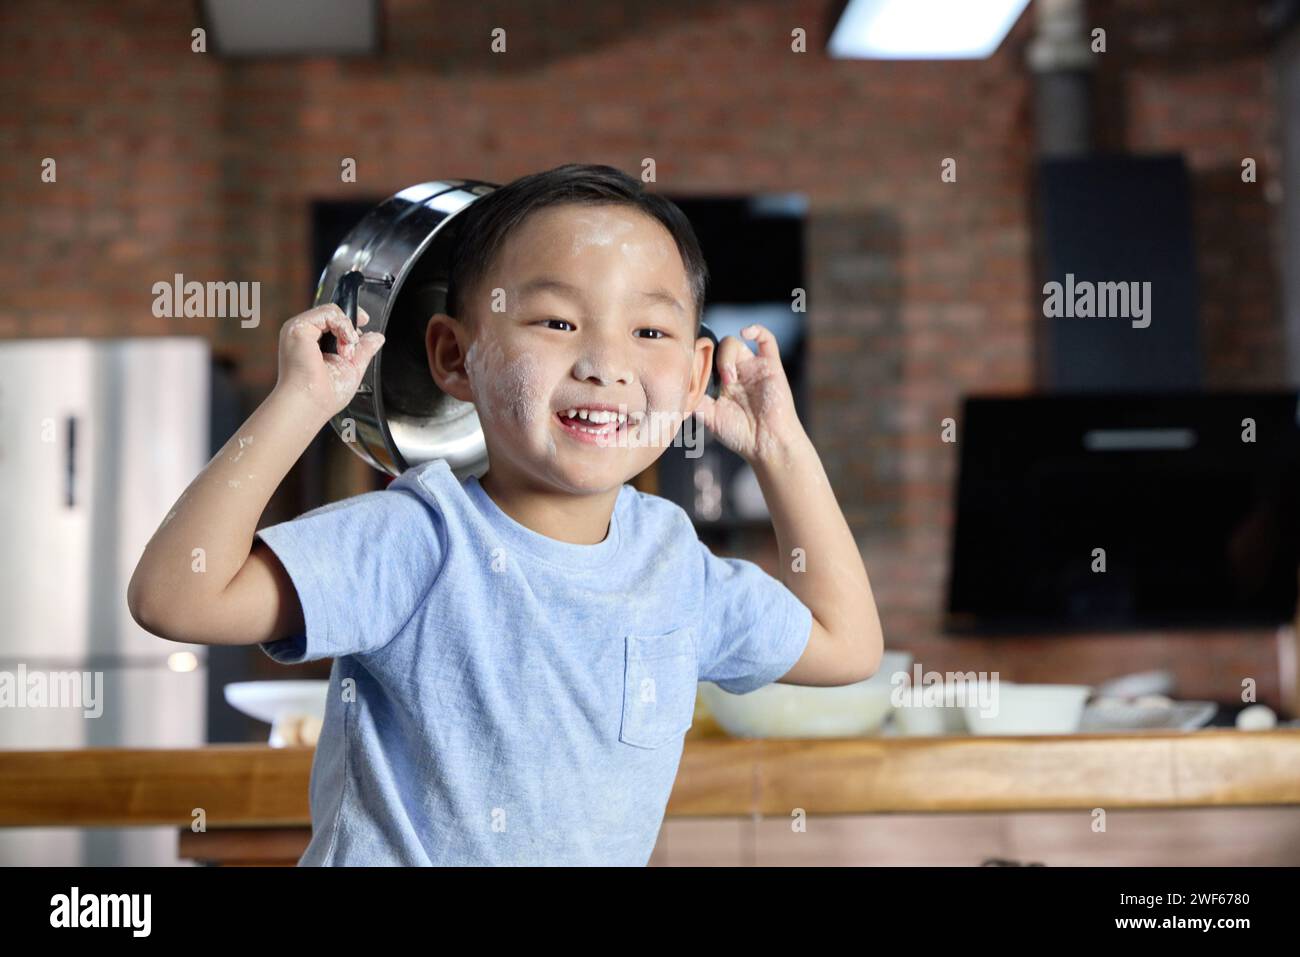 Ein glücklicher kleiner Junge, der mit einem Topf auf dem Kopf spielt Stockfoto